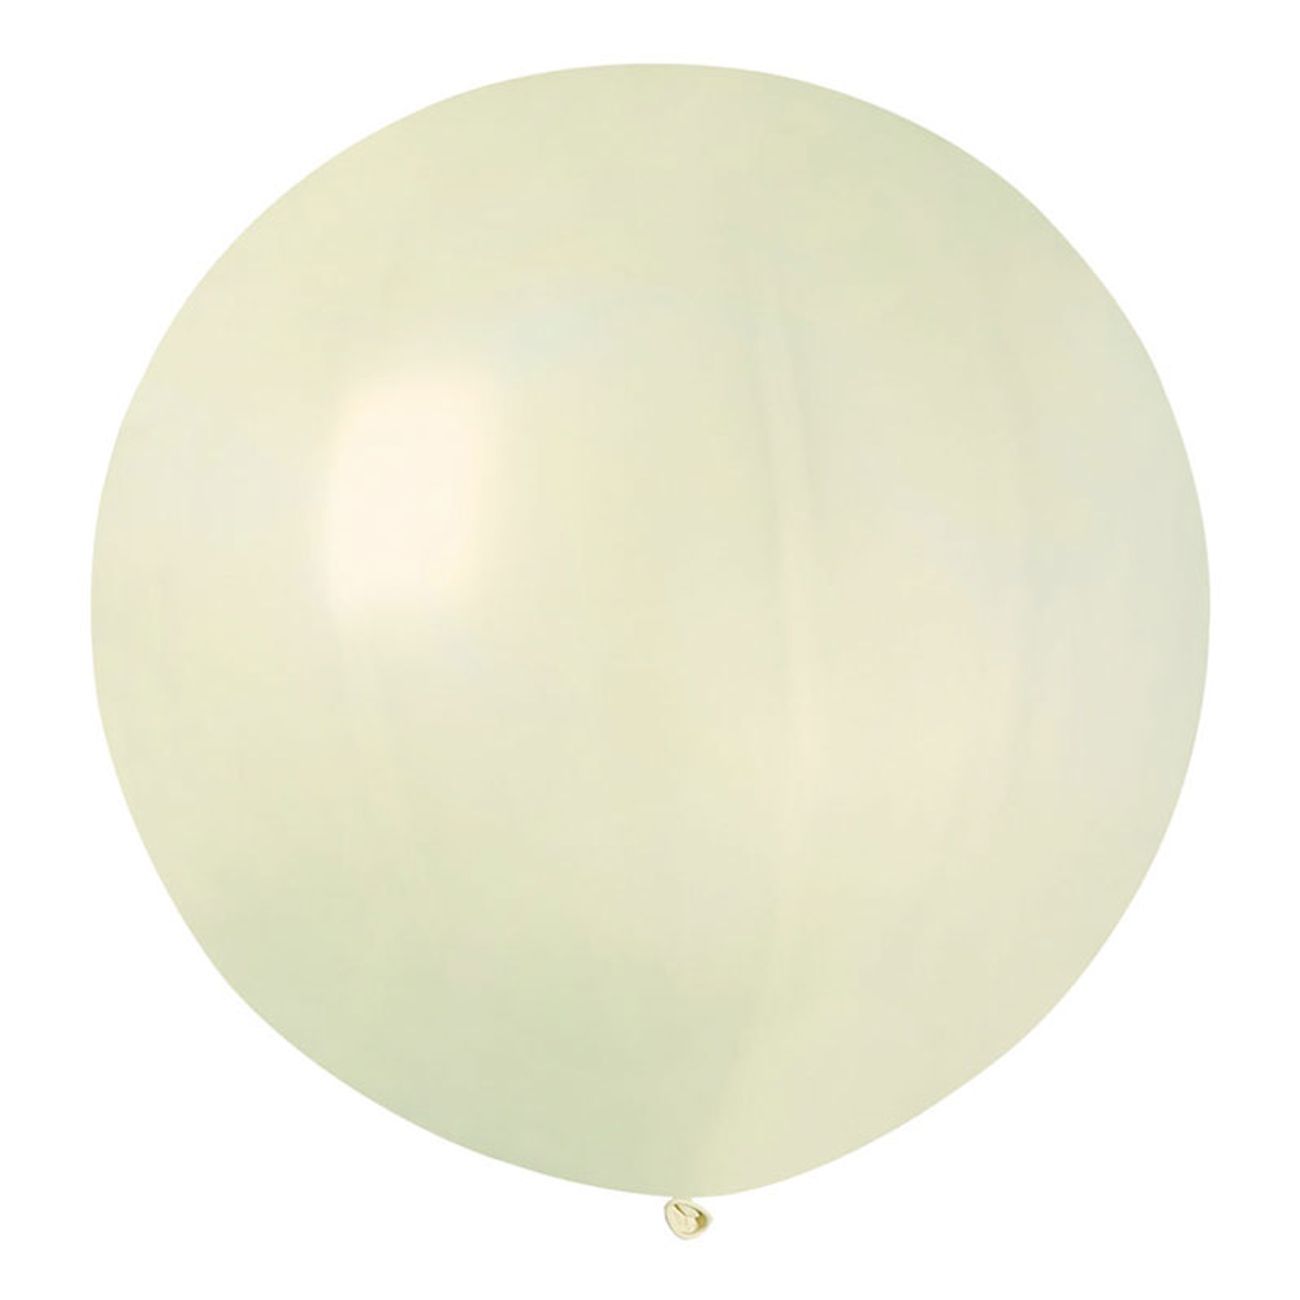 jatteballong-elfenbensvit-1